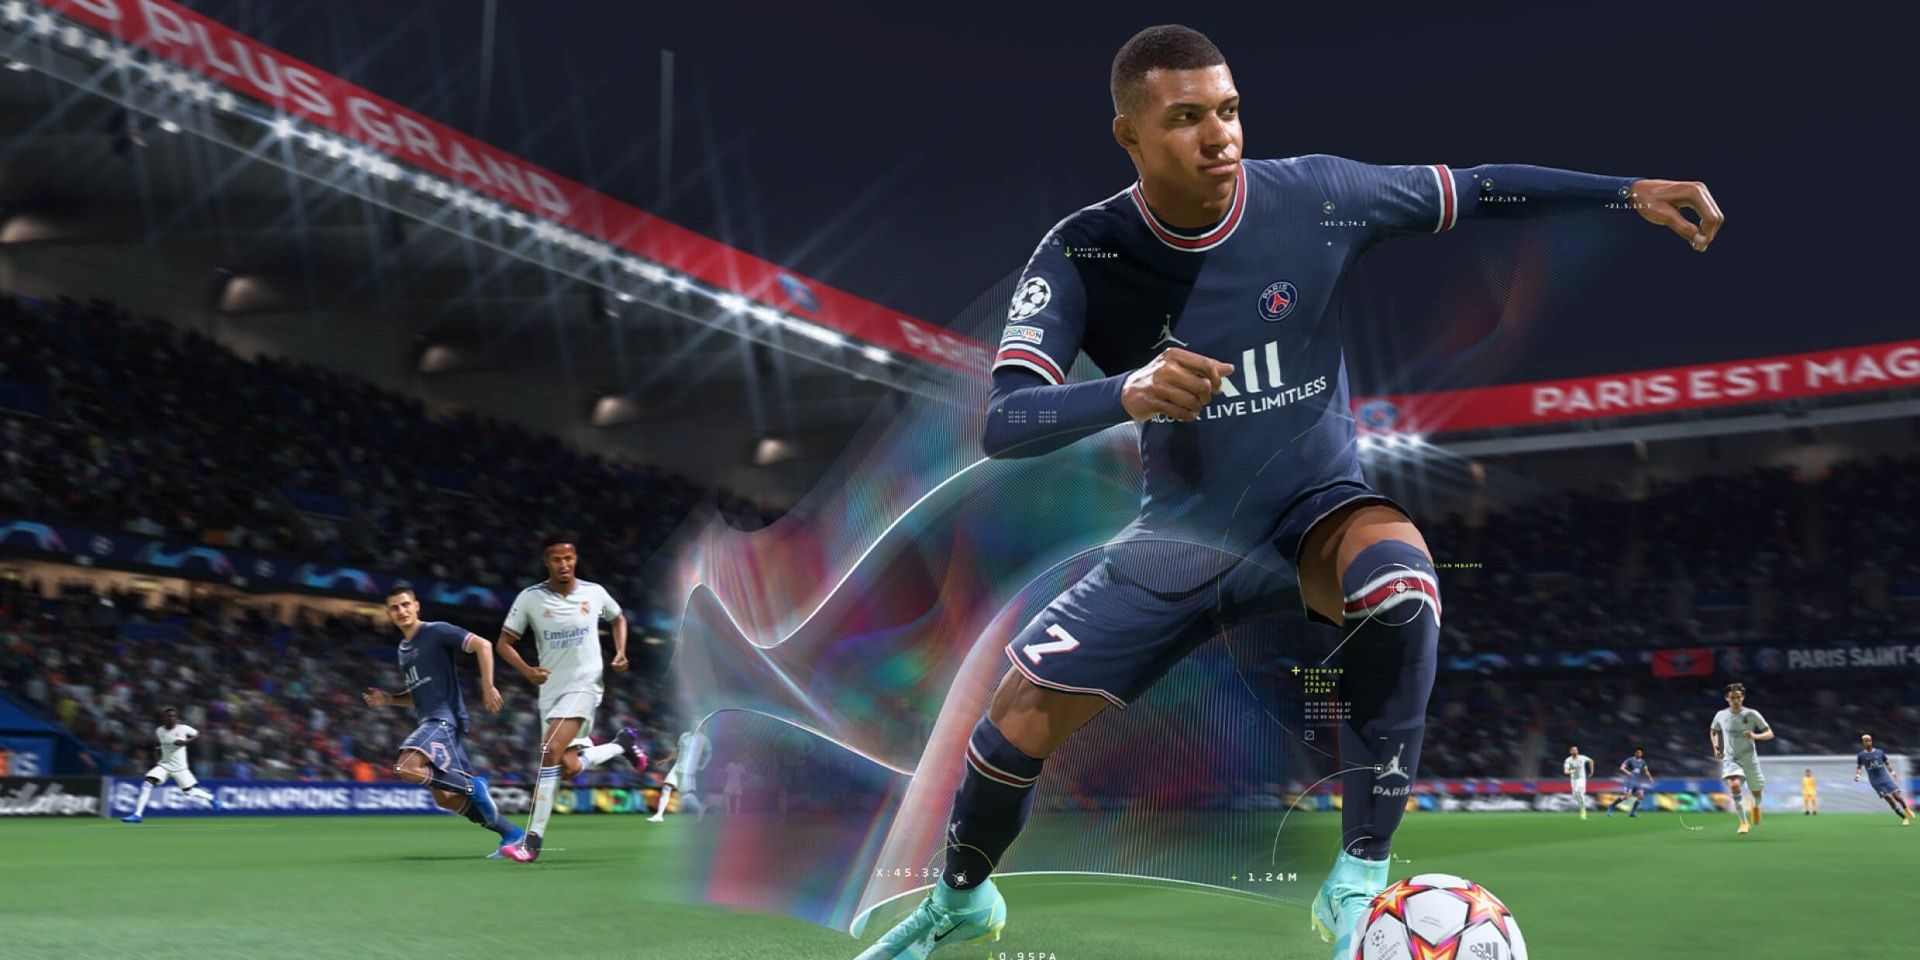 An image still highlighting HyperMotion in FIFA 22